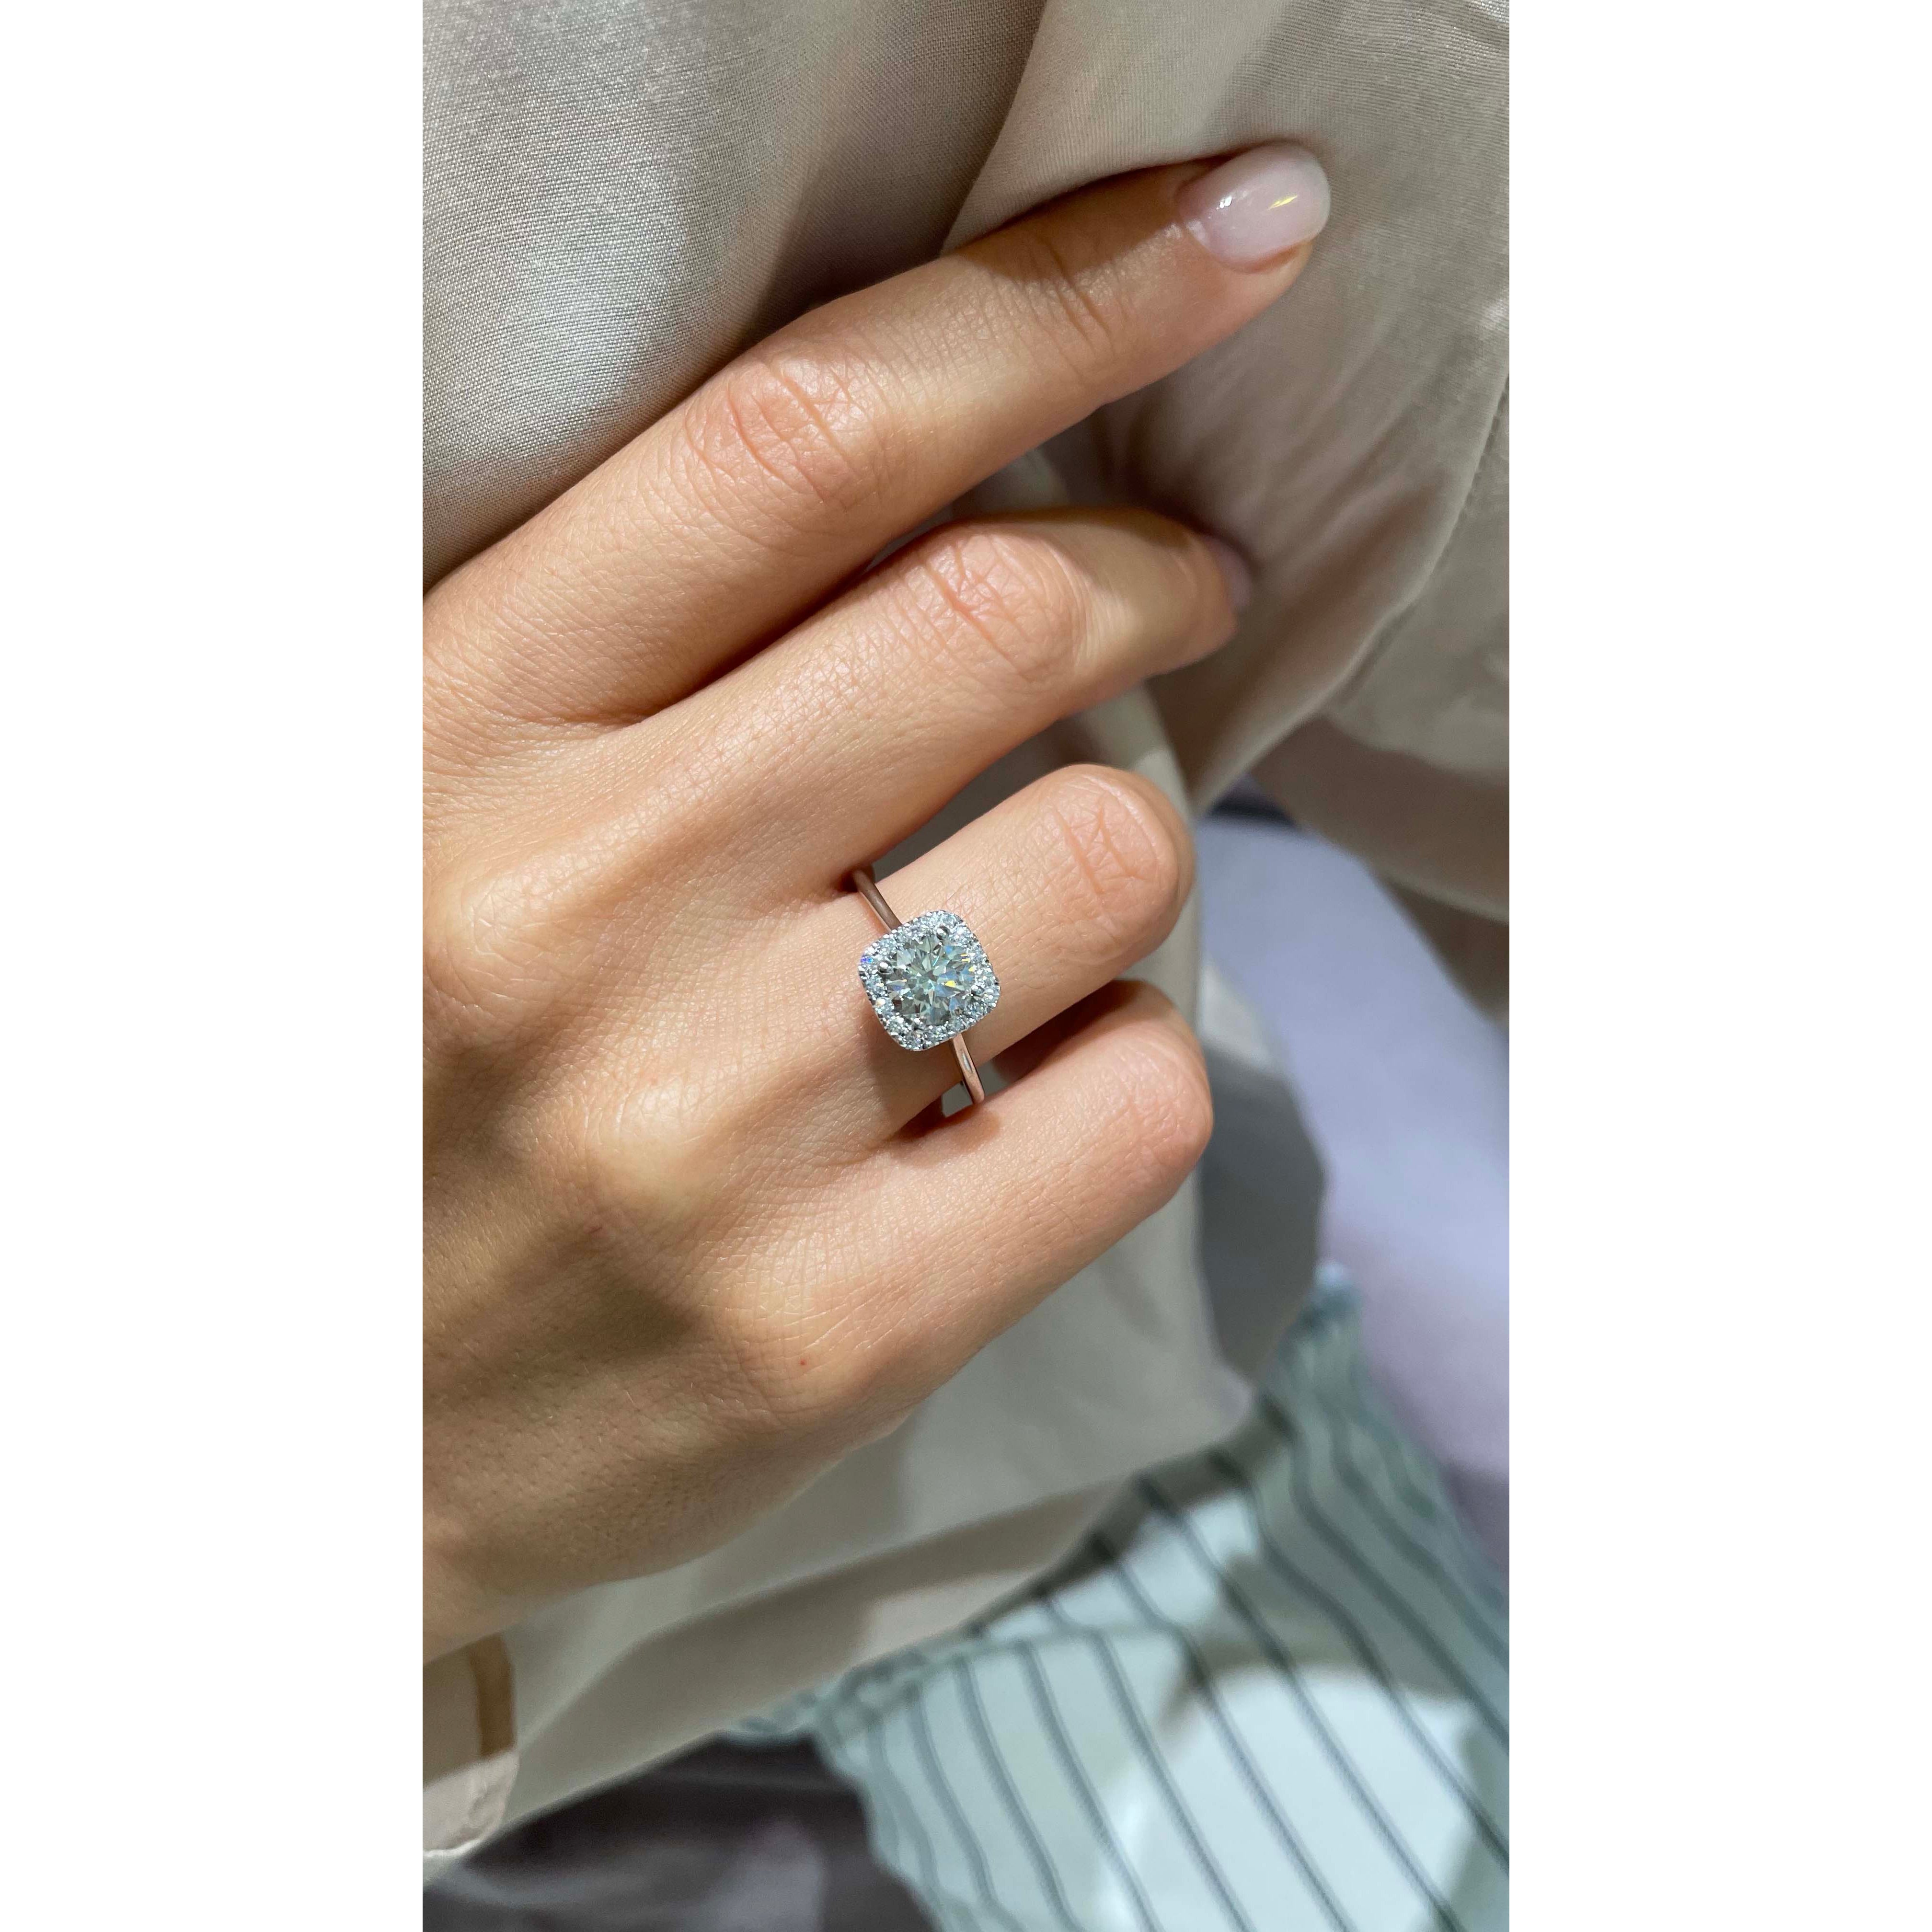 Claudia Diamond Engagement Ring   (1.15 Carat) -Platinum